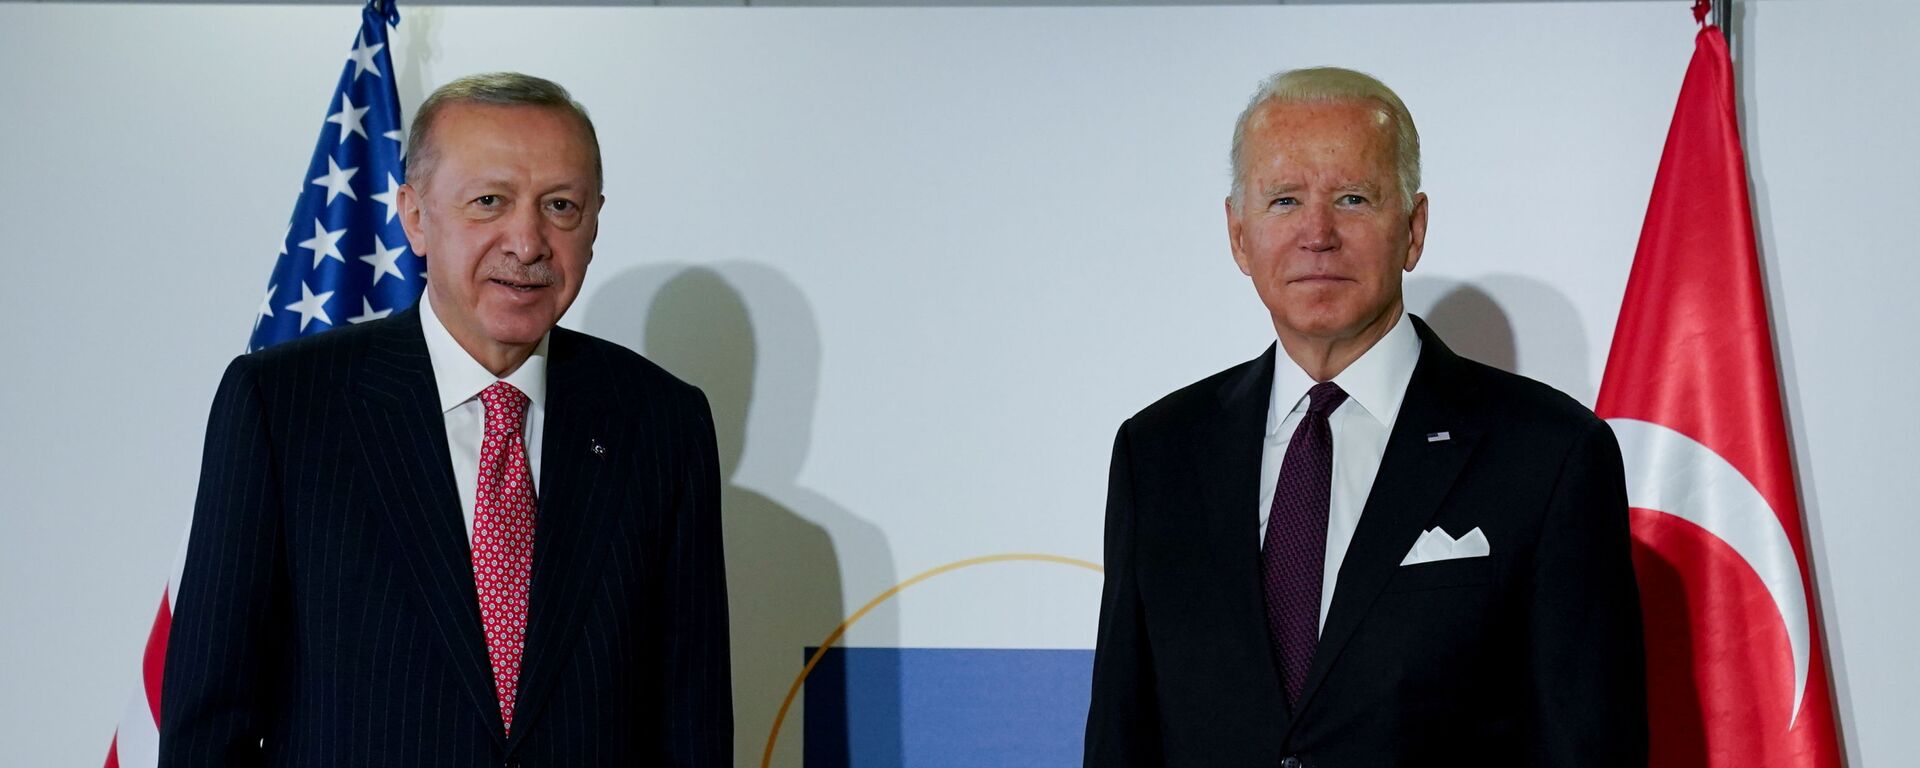 الرئيس الأمريكي جو بايدن والرئيس التركي رجب طيب أردوغان في اجتماع ثنائي على هامش قمة قادة مجموعة العشرين في روما، إيطاليا، 31 أكتوبر / تشرين الأول 2021 - سبوتنيك عربي, 1920, 31.10.2021